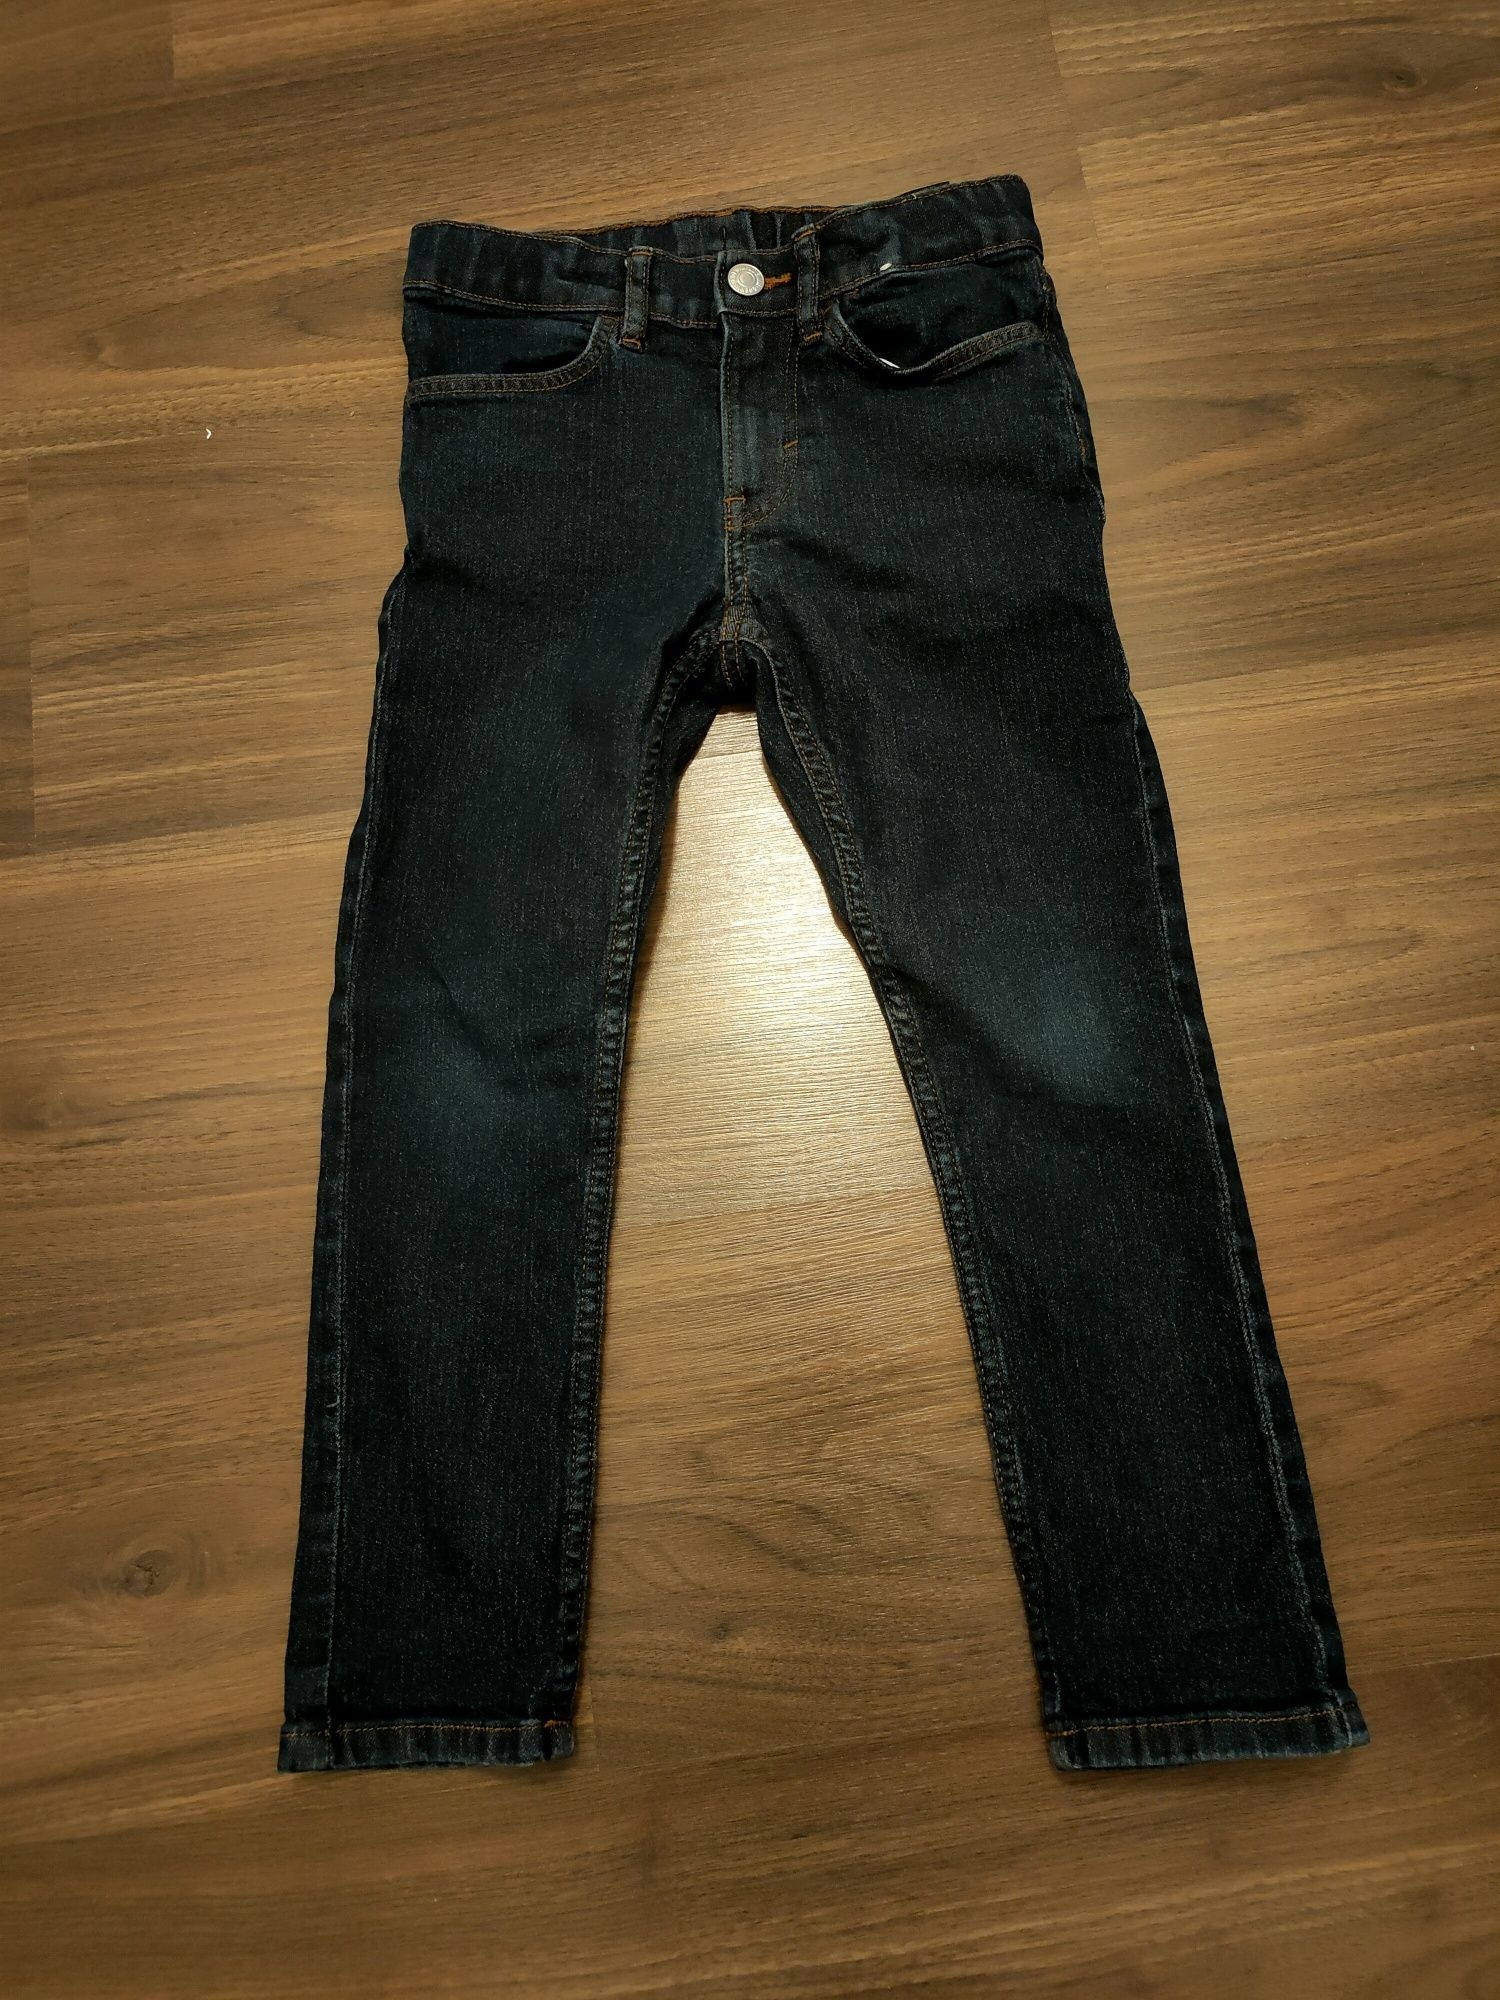 Spodnie jeans HM, 116